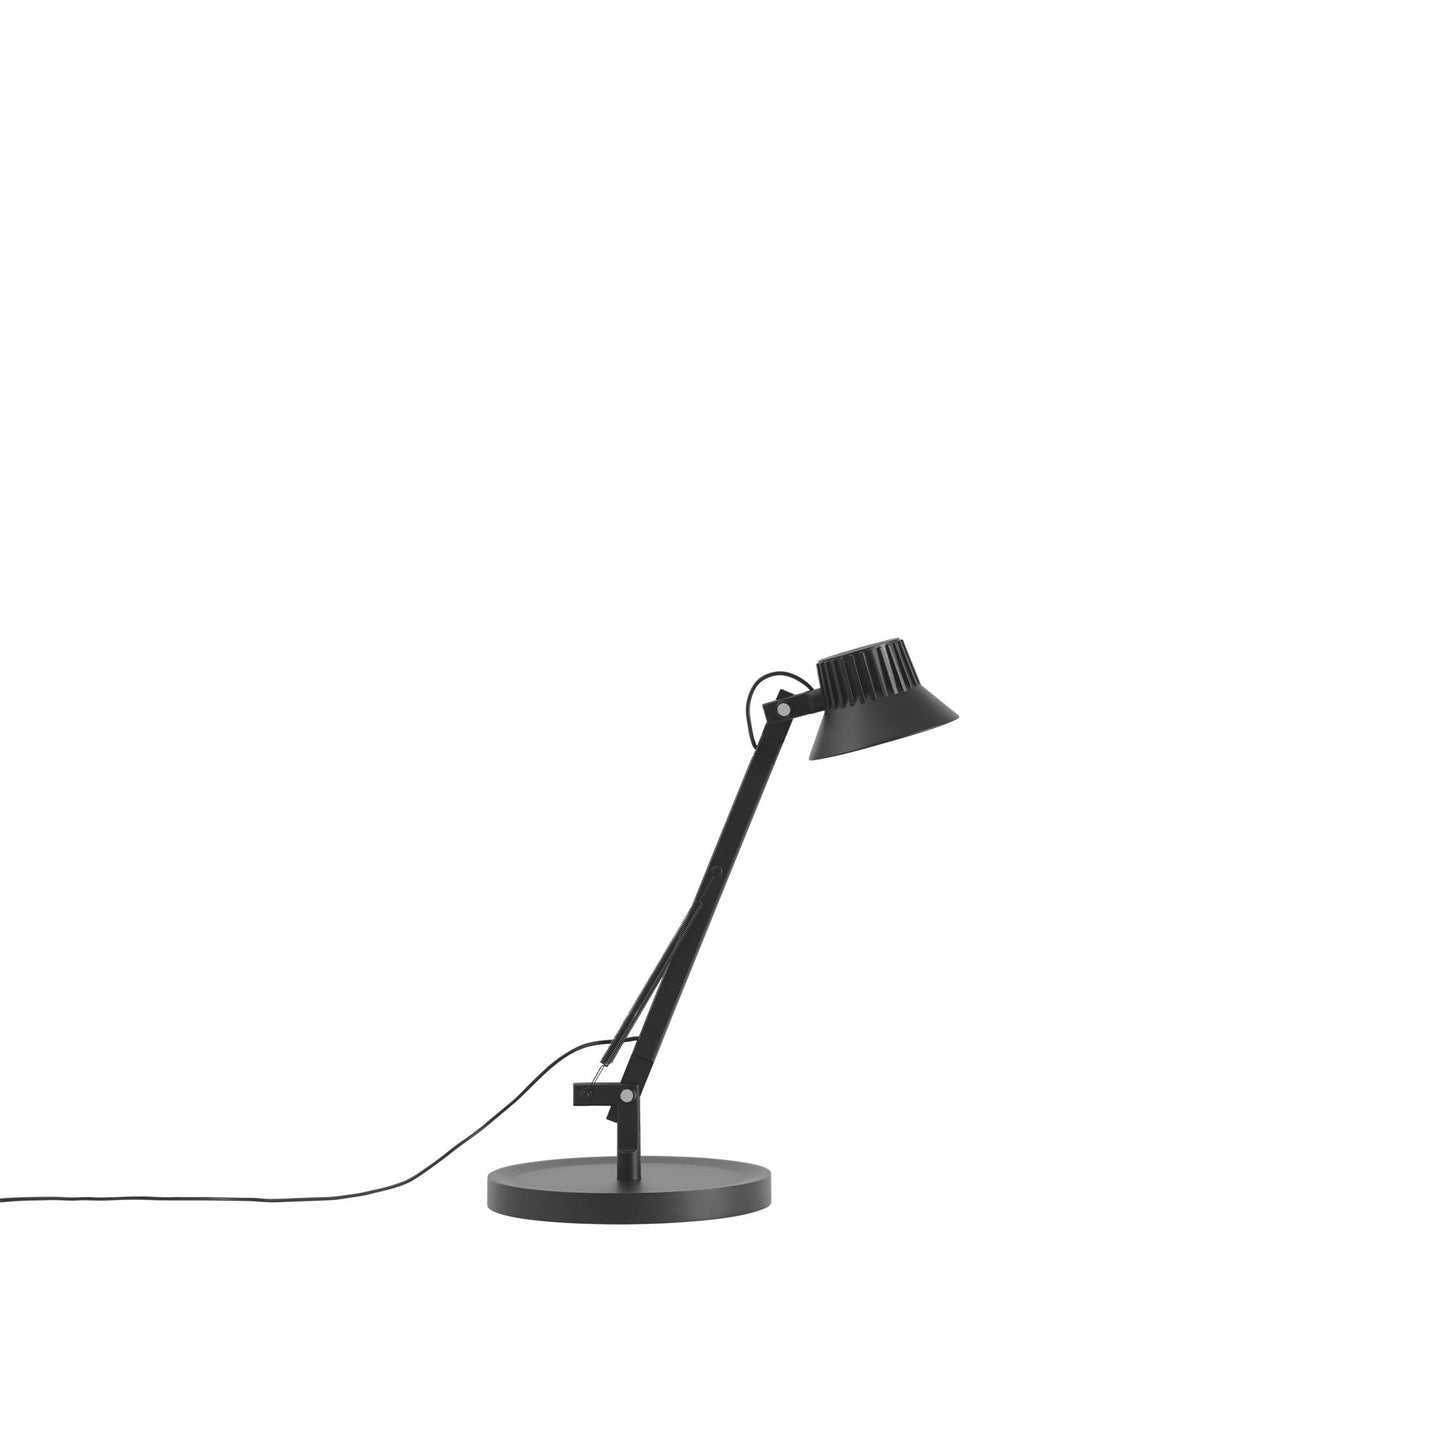 Dedicate S1 Table Lamp by Muuto #Black